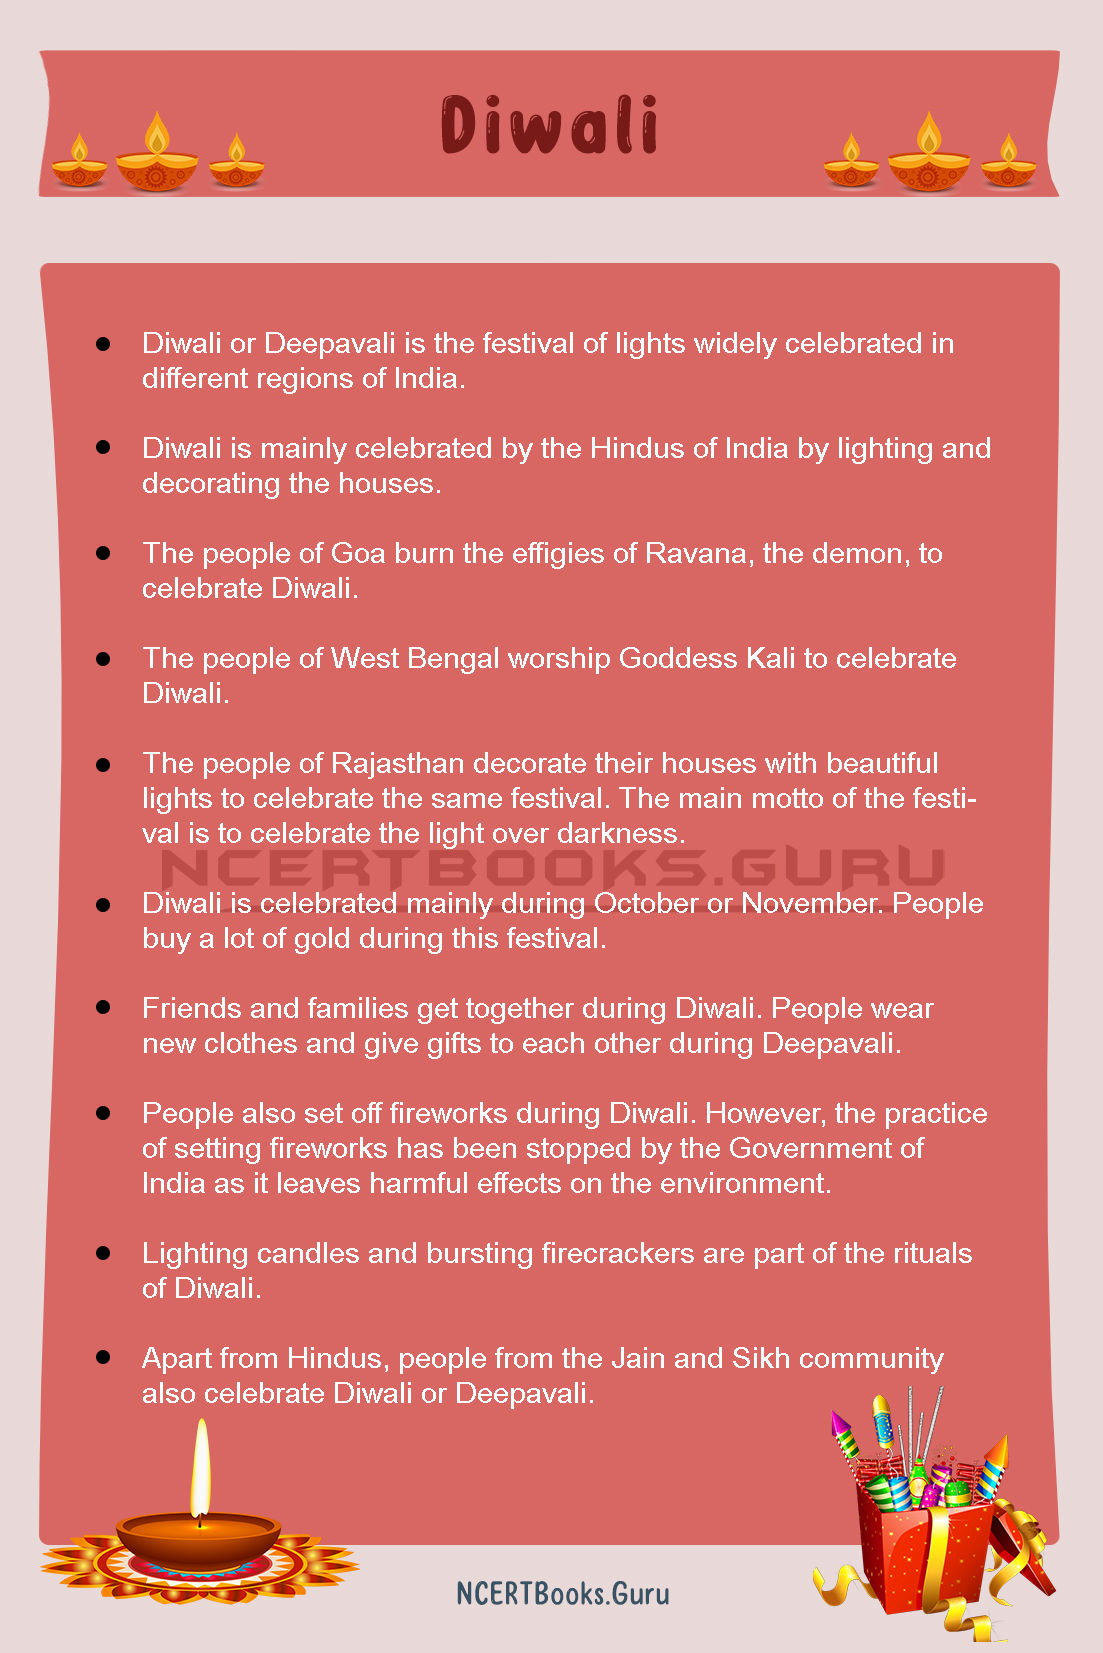 diwali festival information in english essay